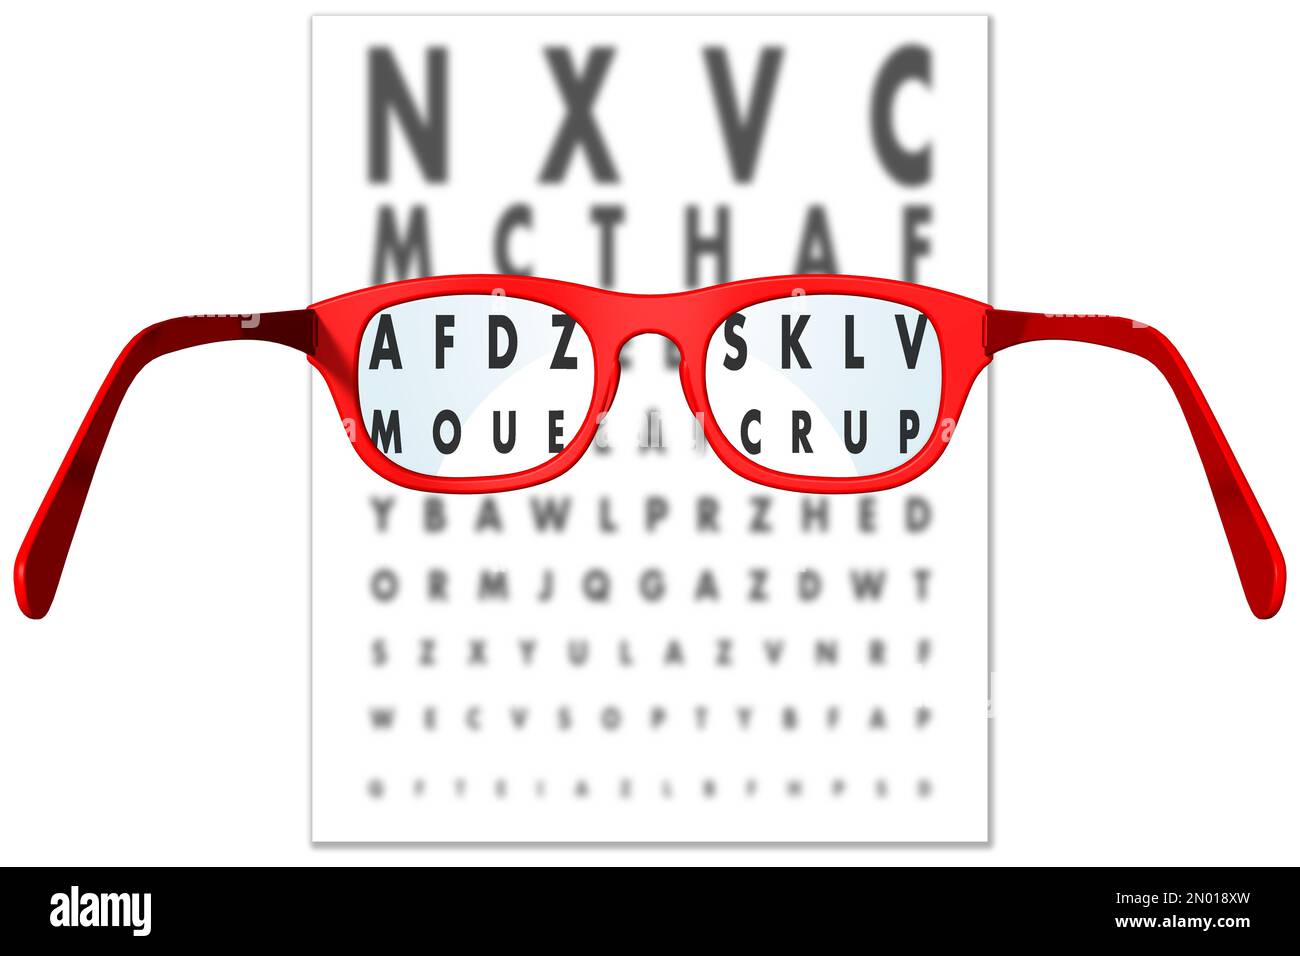 3D illustration. Les verres de lunettes focalisent les lettres pour une vue et une lecture parfaites. Banque D'Images